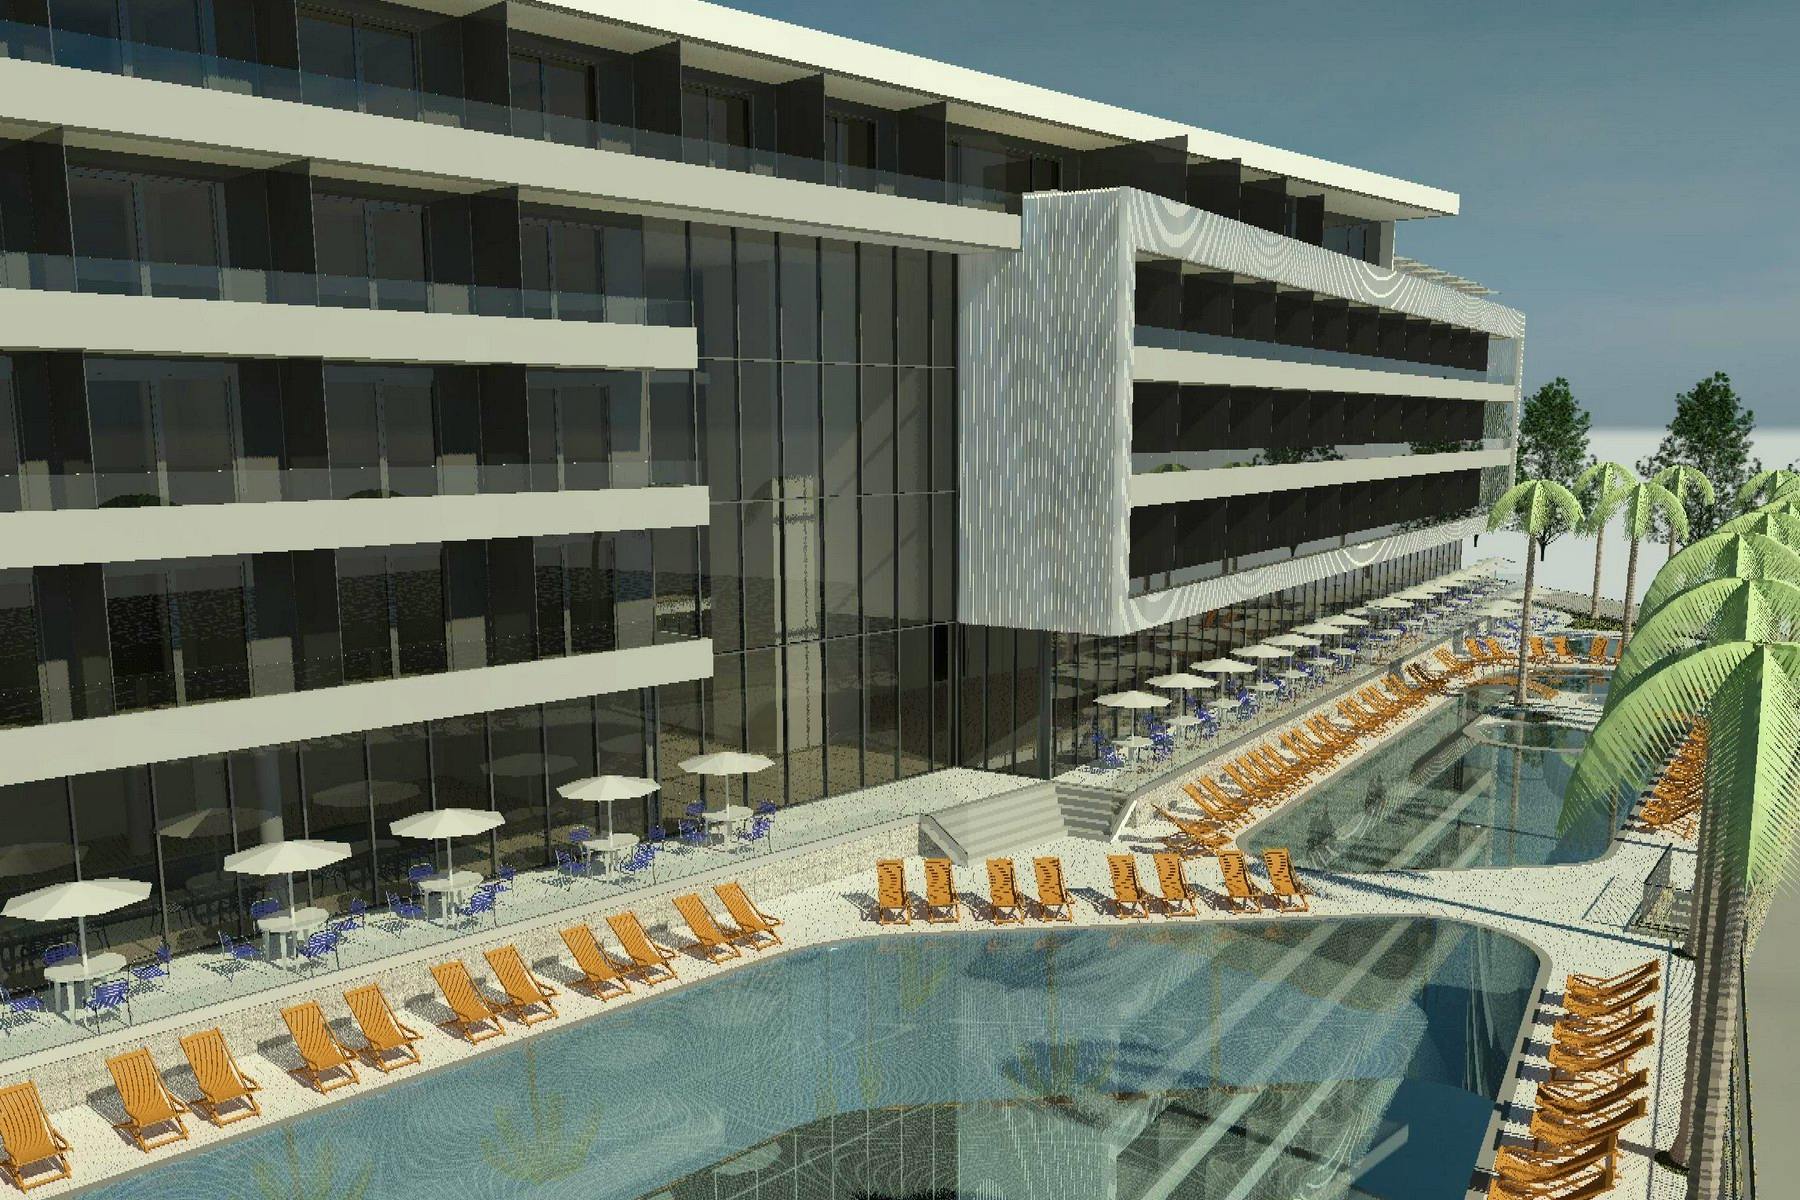 Moderni hotel za prodaju pokraj Splita